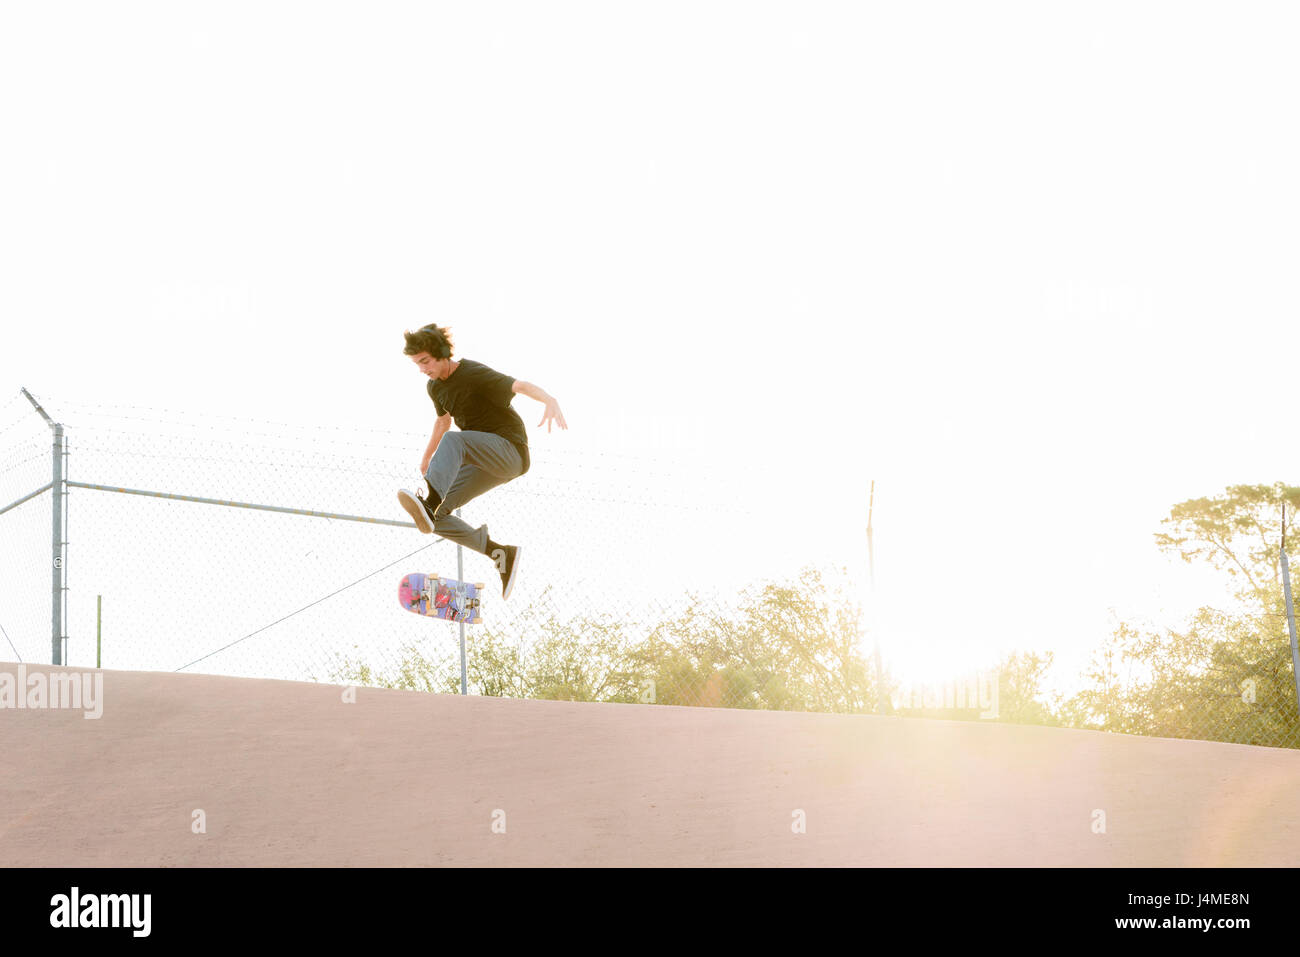 Hispanic Mann Durchführung der Luft Trick auf skateboard Stockfoto